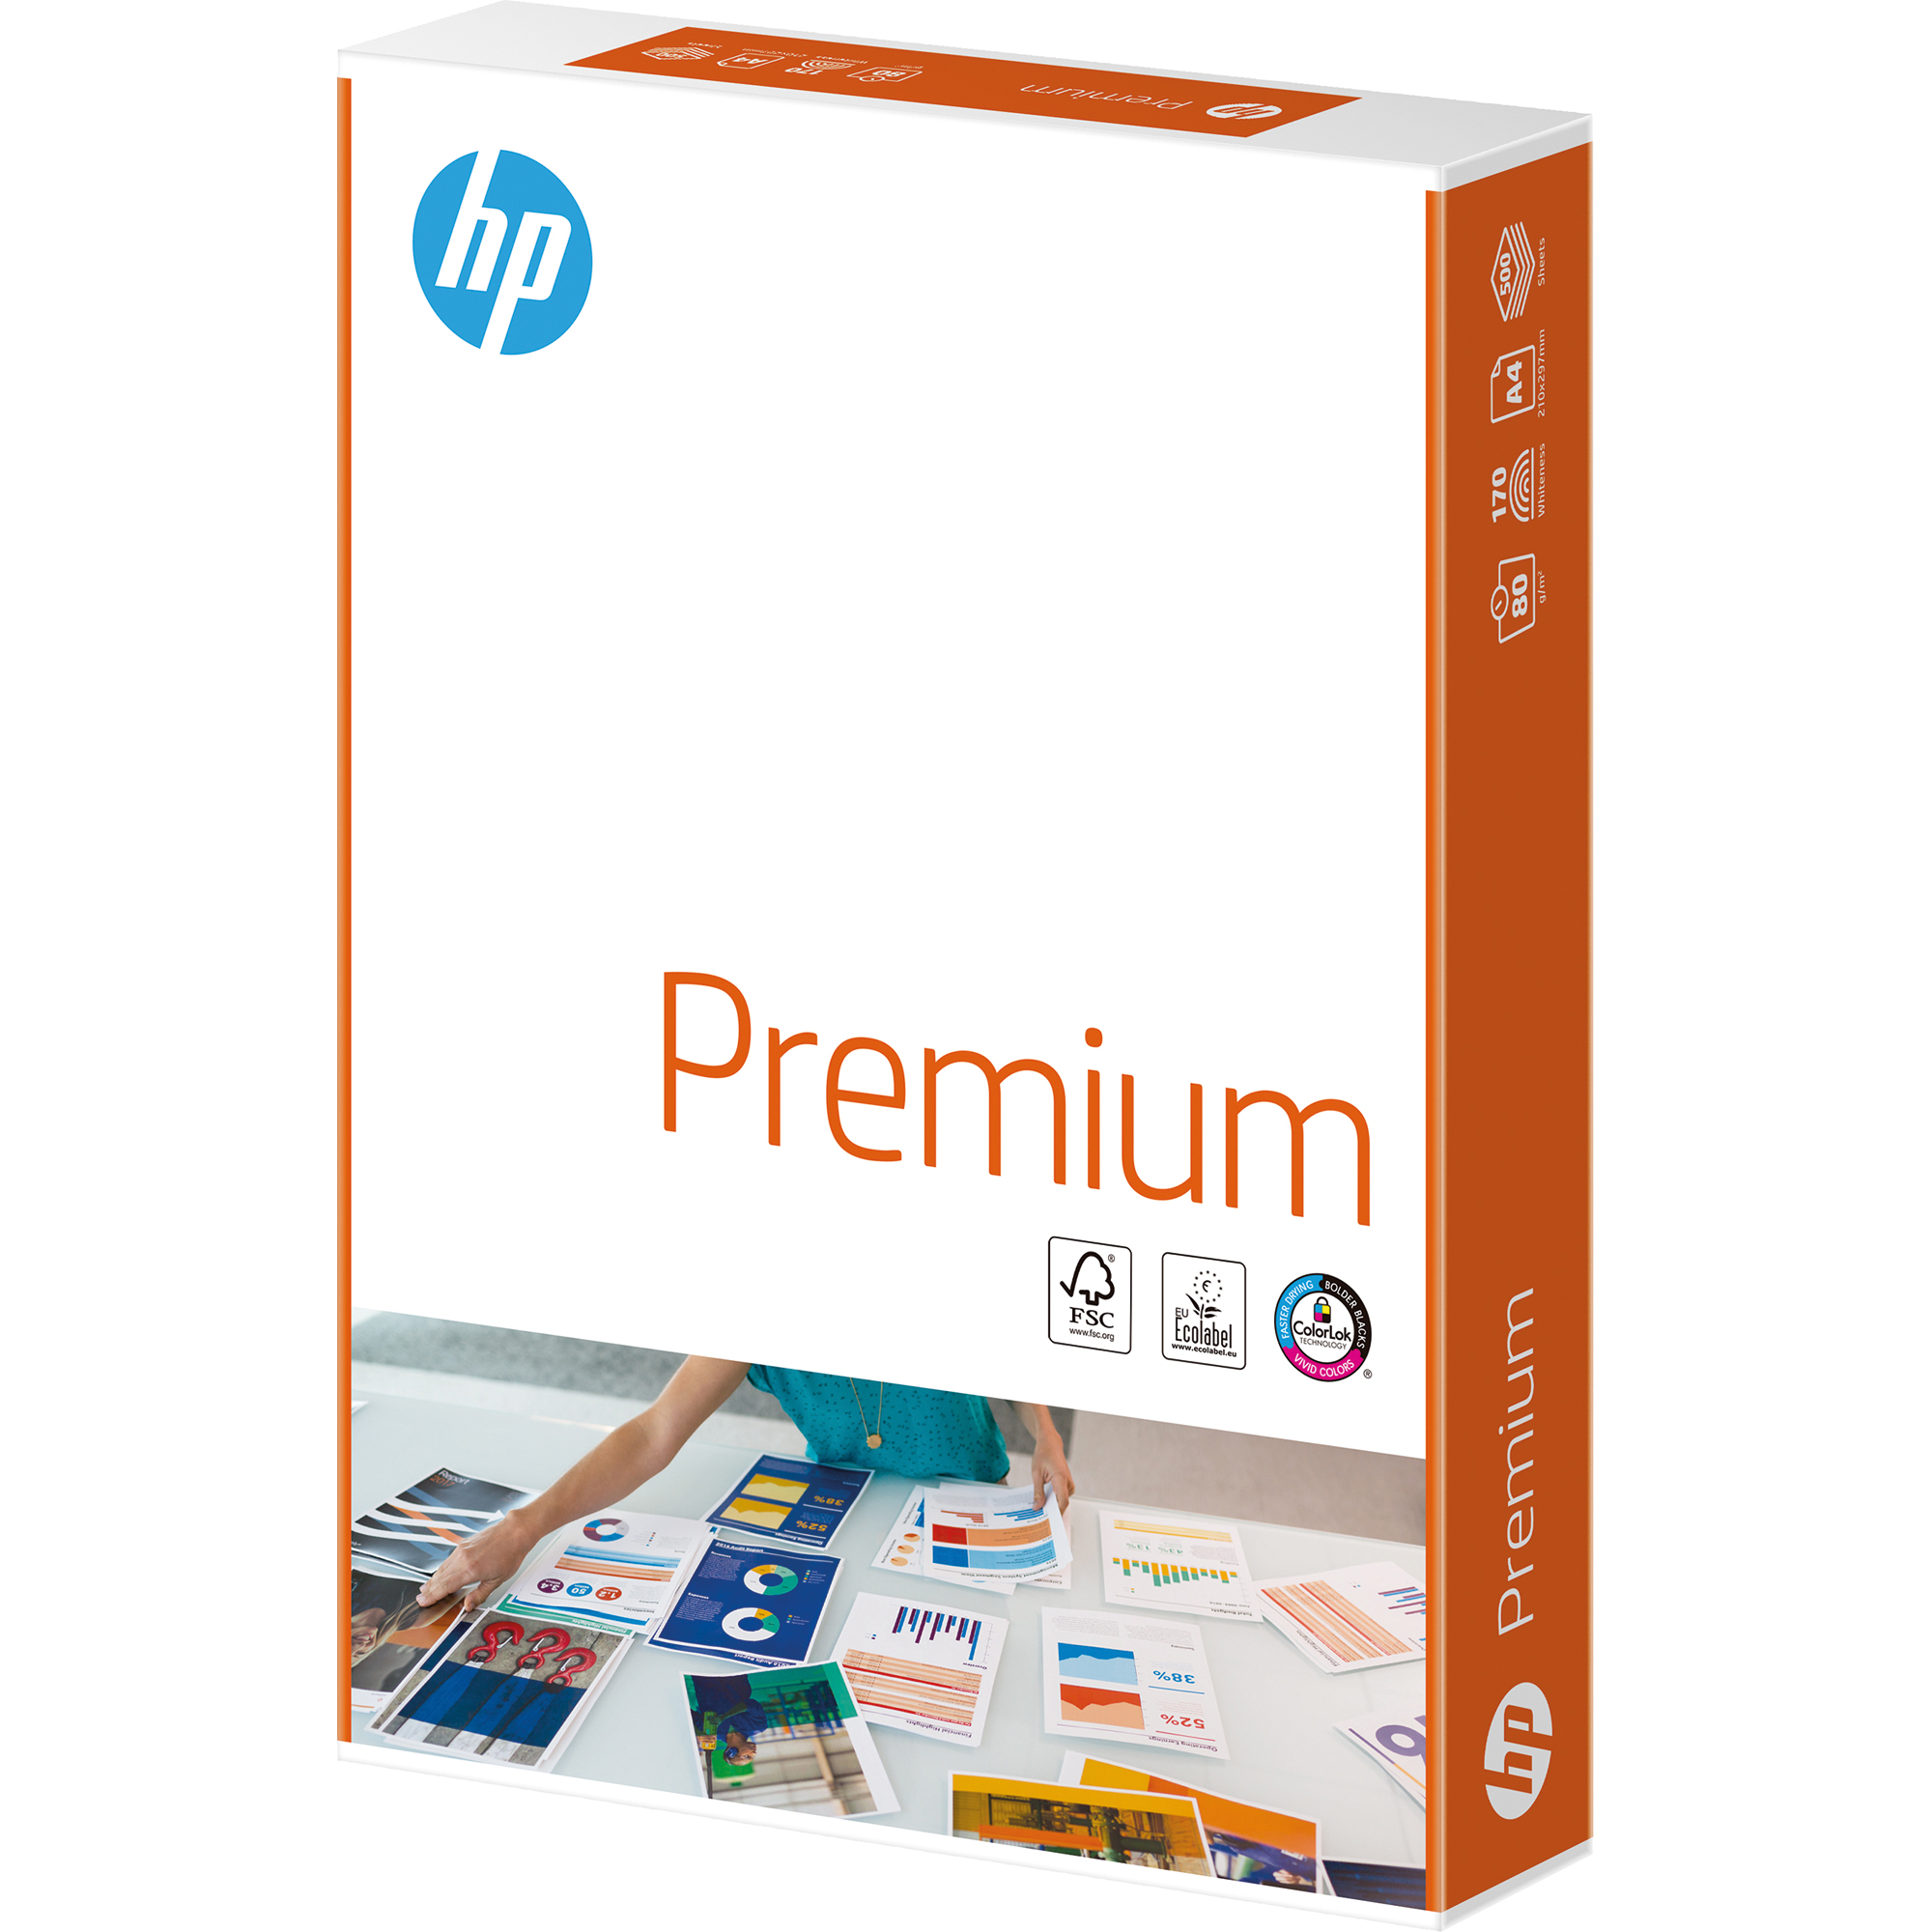 HP Kopierpapier Premium CHP850 Packung A4 weiß 80g A4 1 500 Bl./Pack. Kopierpapier DIN